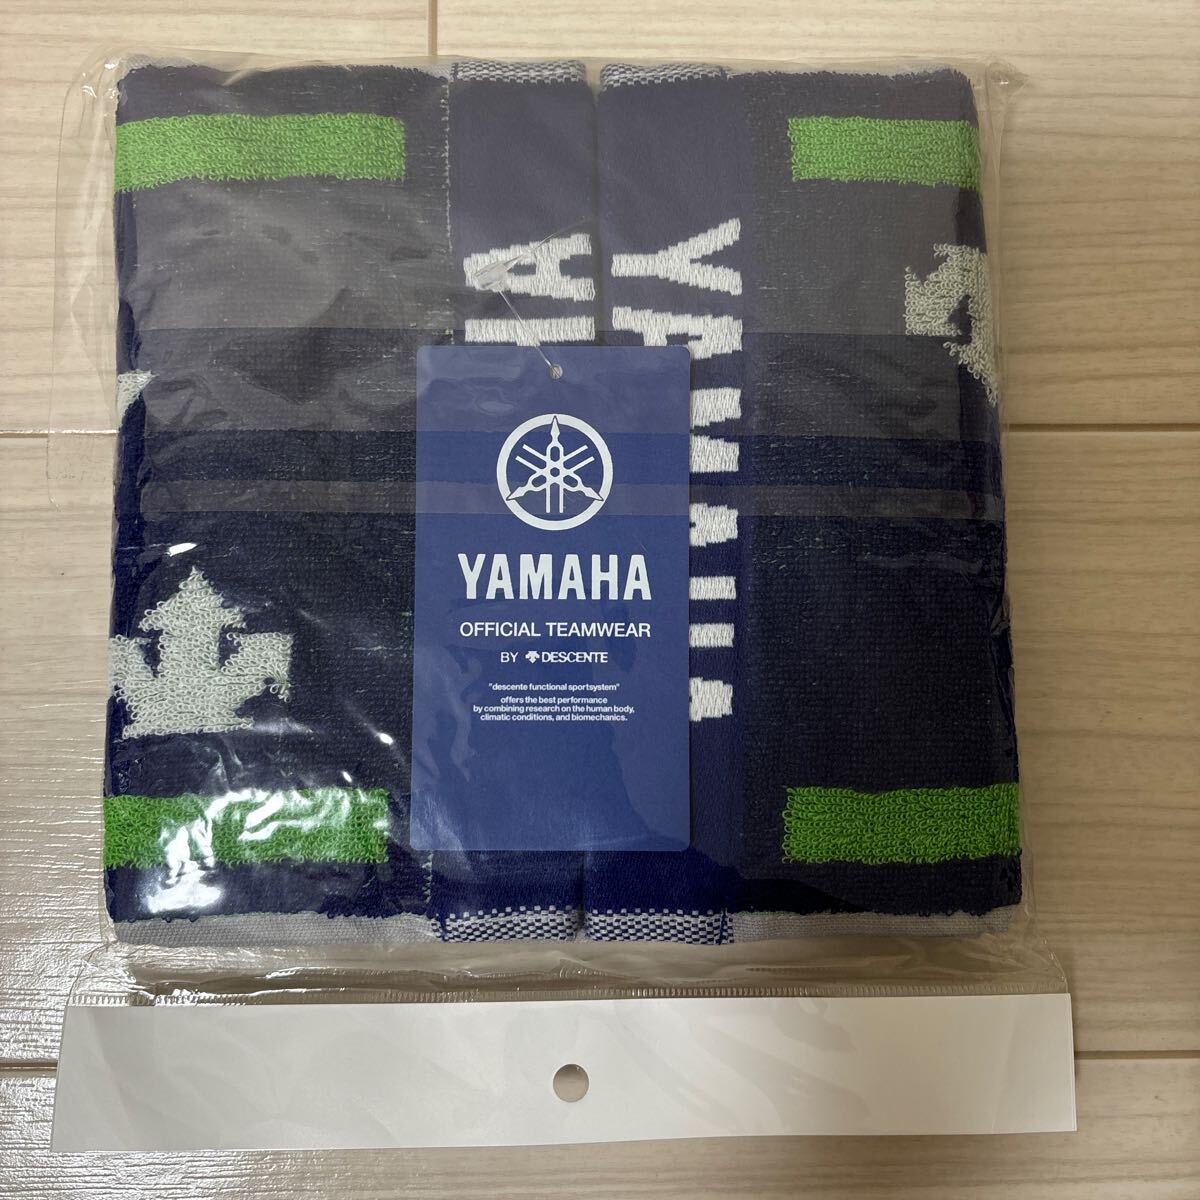  новый товар MotoGP YAMAHA movistar RACING Yamaha официальный полотенце muffler wise механизм Descente сделано в Японии 1,190mm × 205mm обычная цена 2,700 иен 